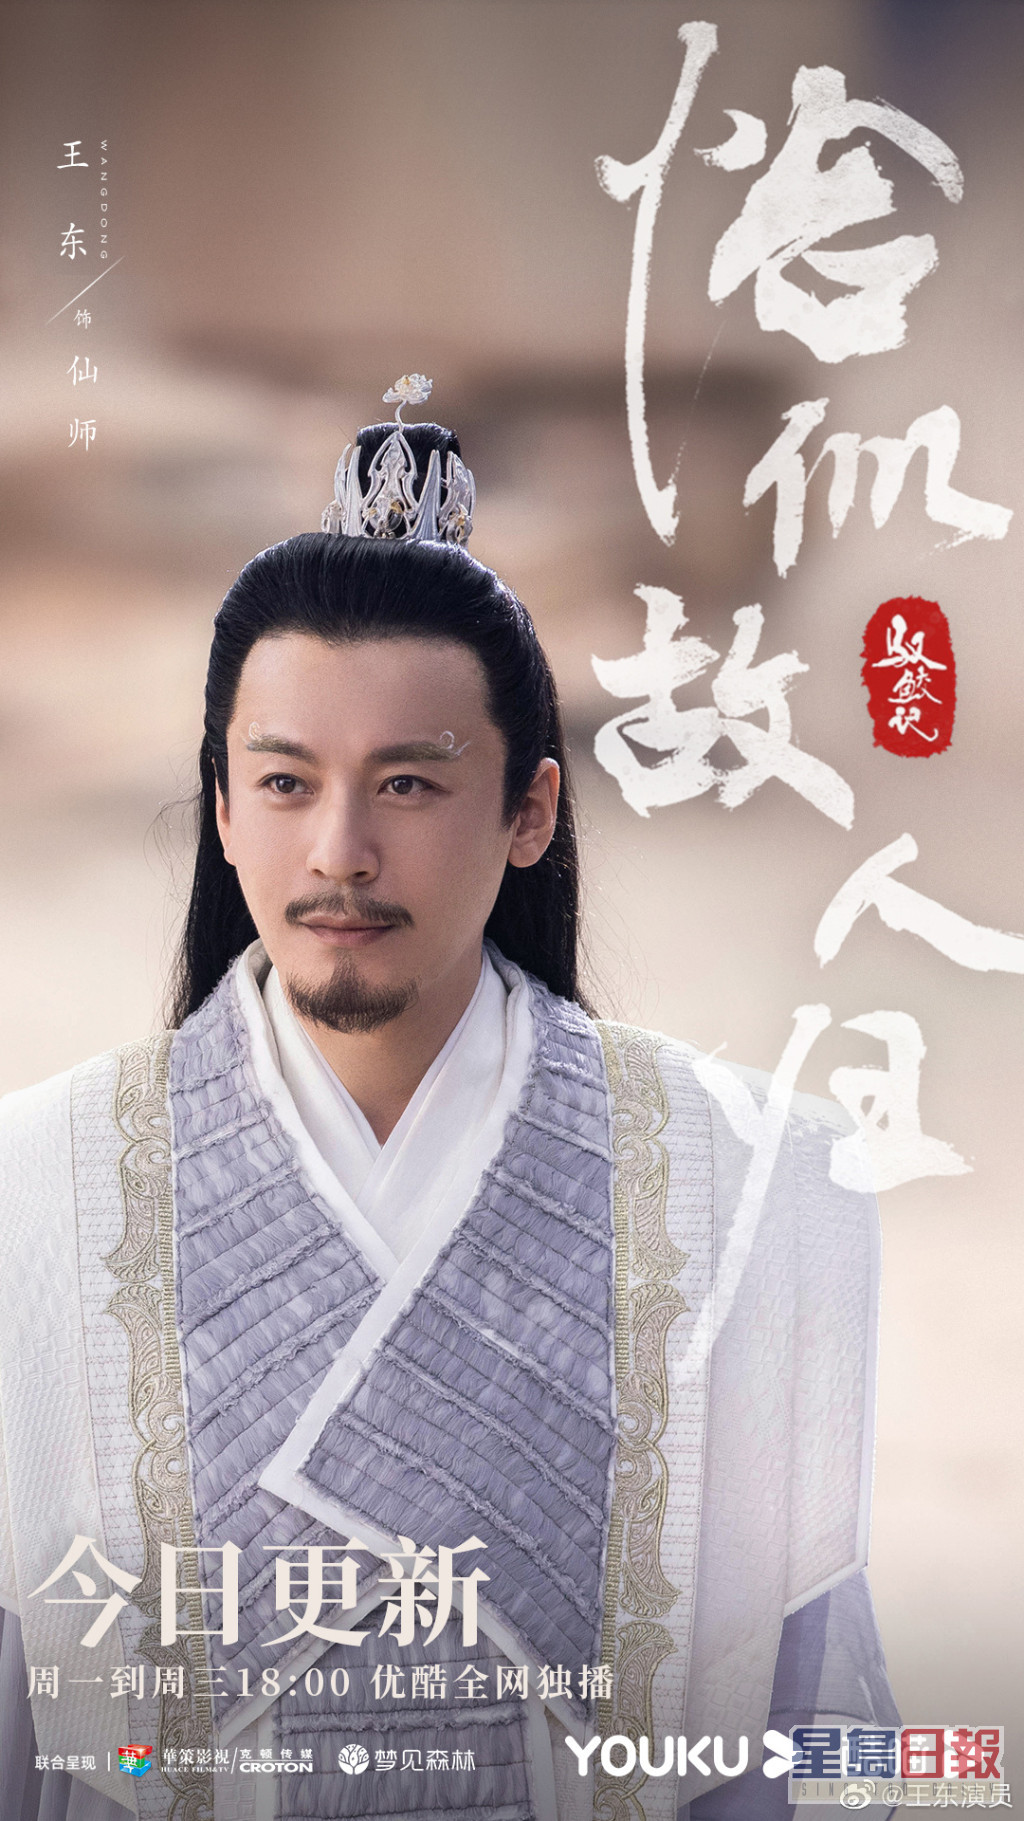 王東於劇中飾演「仙師」一角，令他知名度提升。